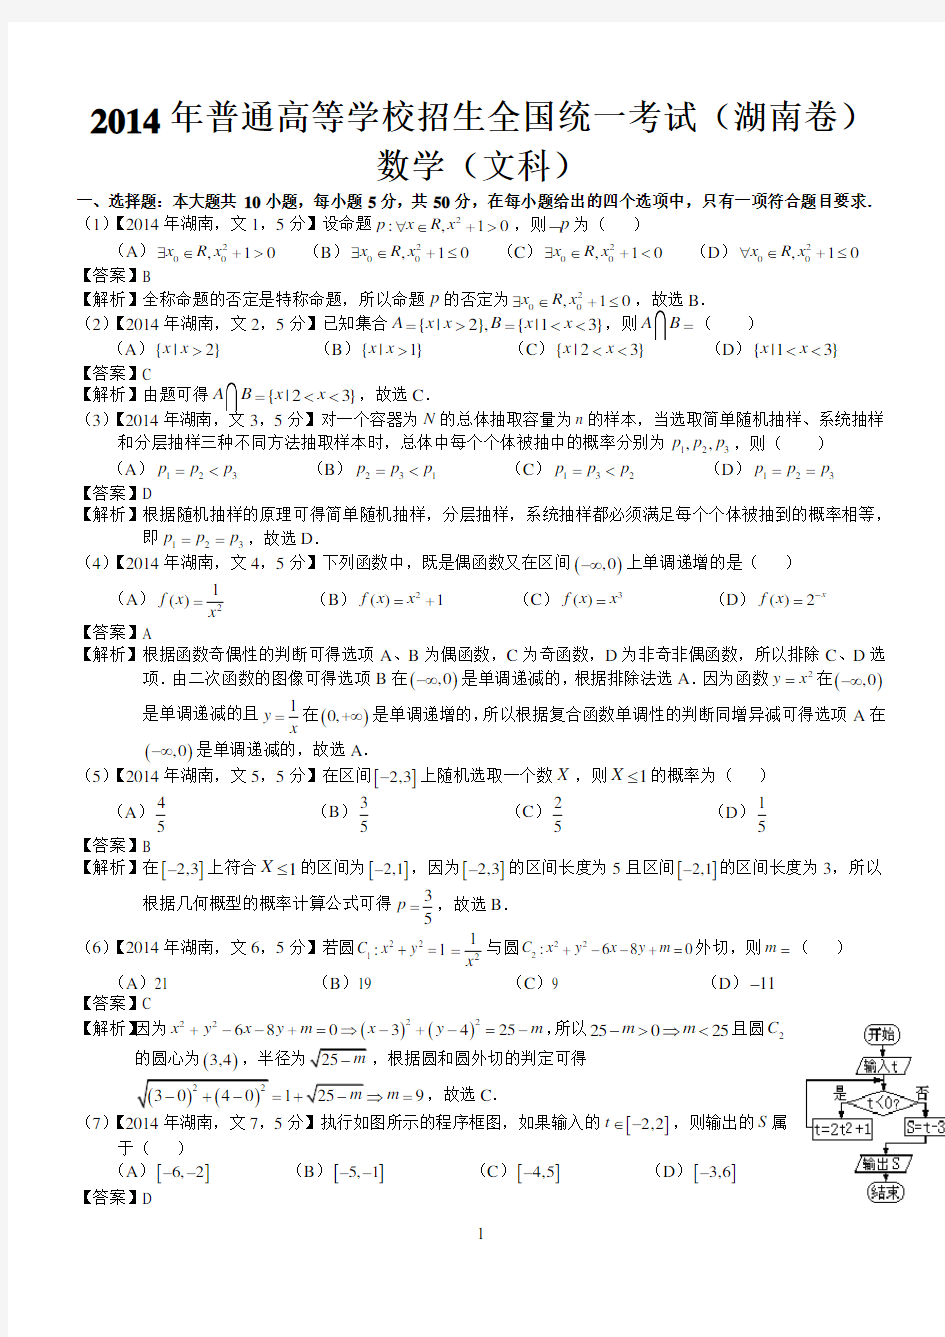 (完整版)2014年高考湖南文科数学试题及答案(word解析版)